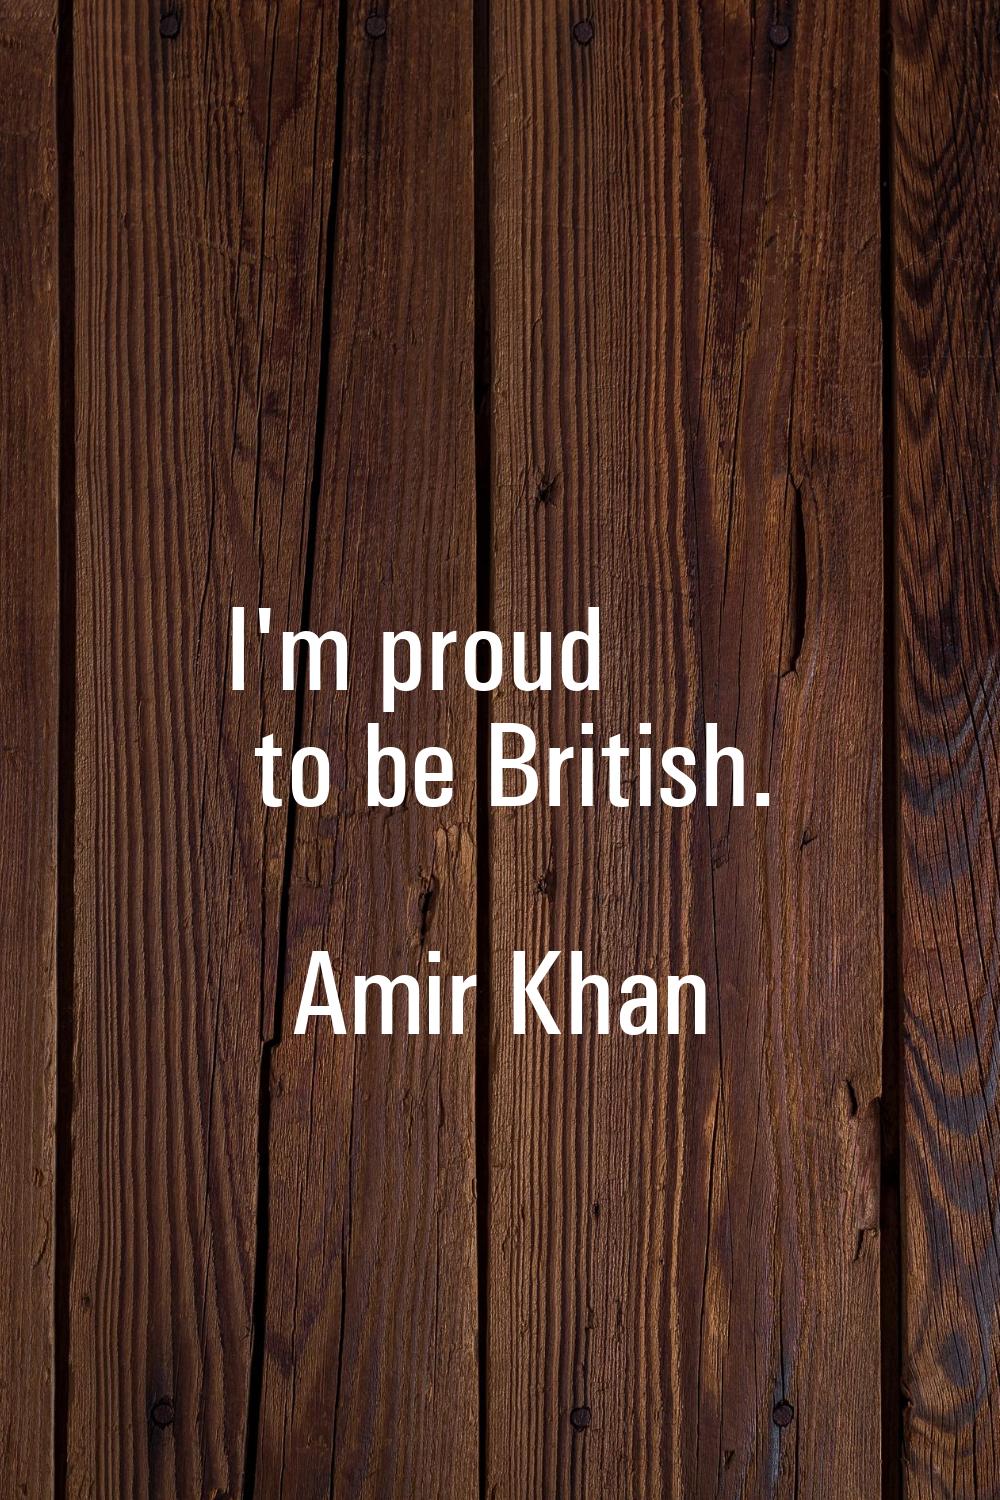 I'm proud to be British.